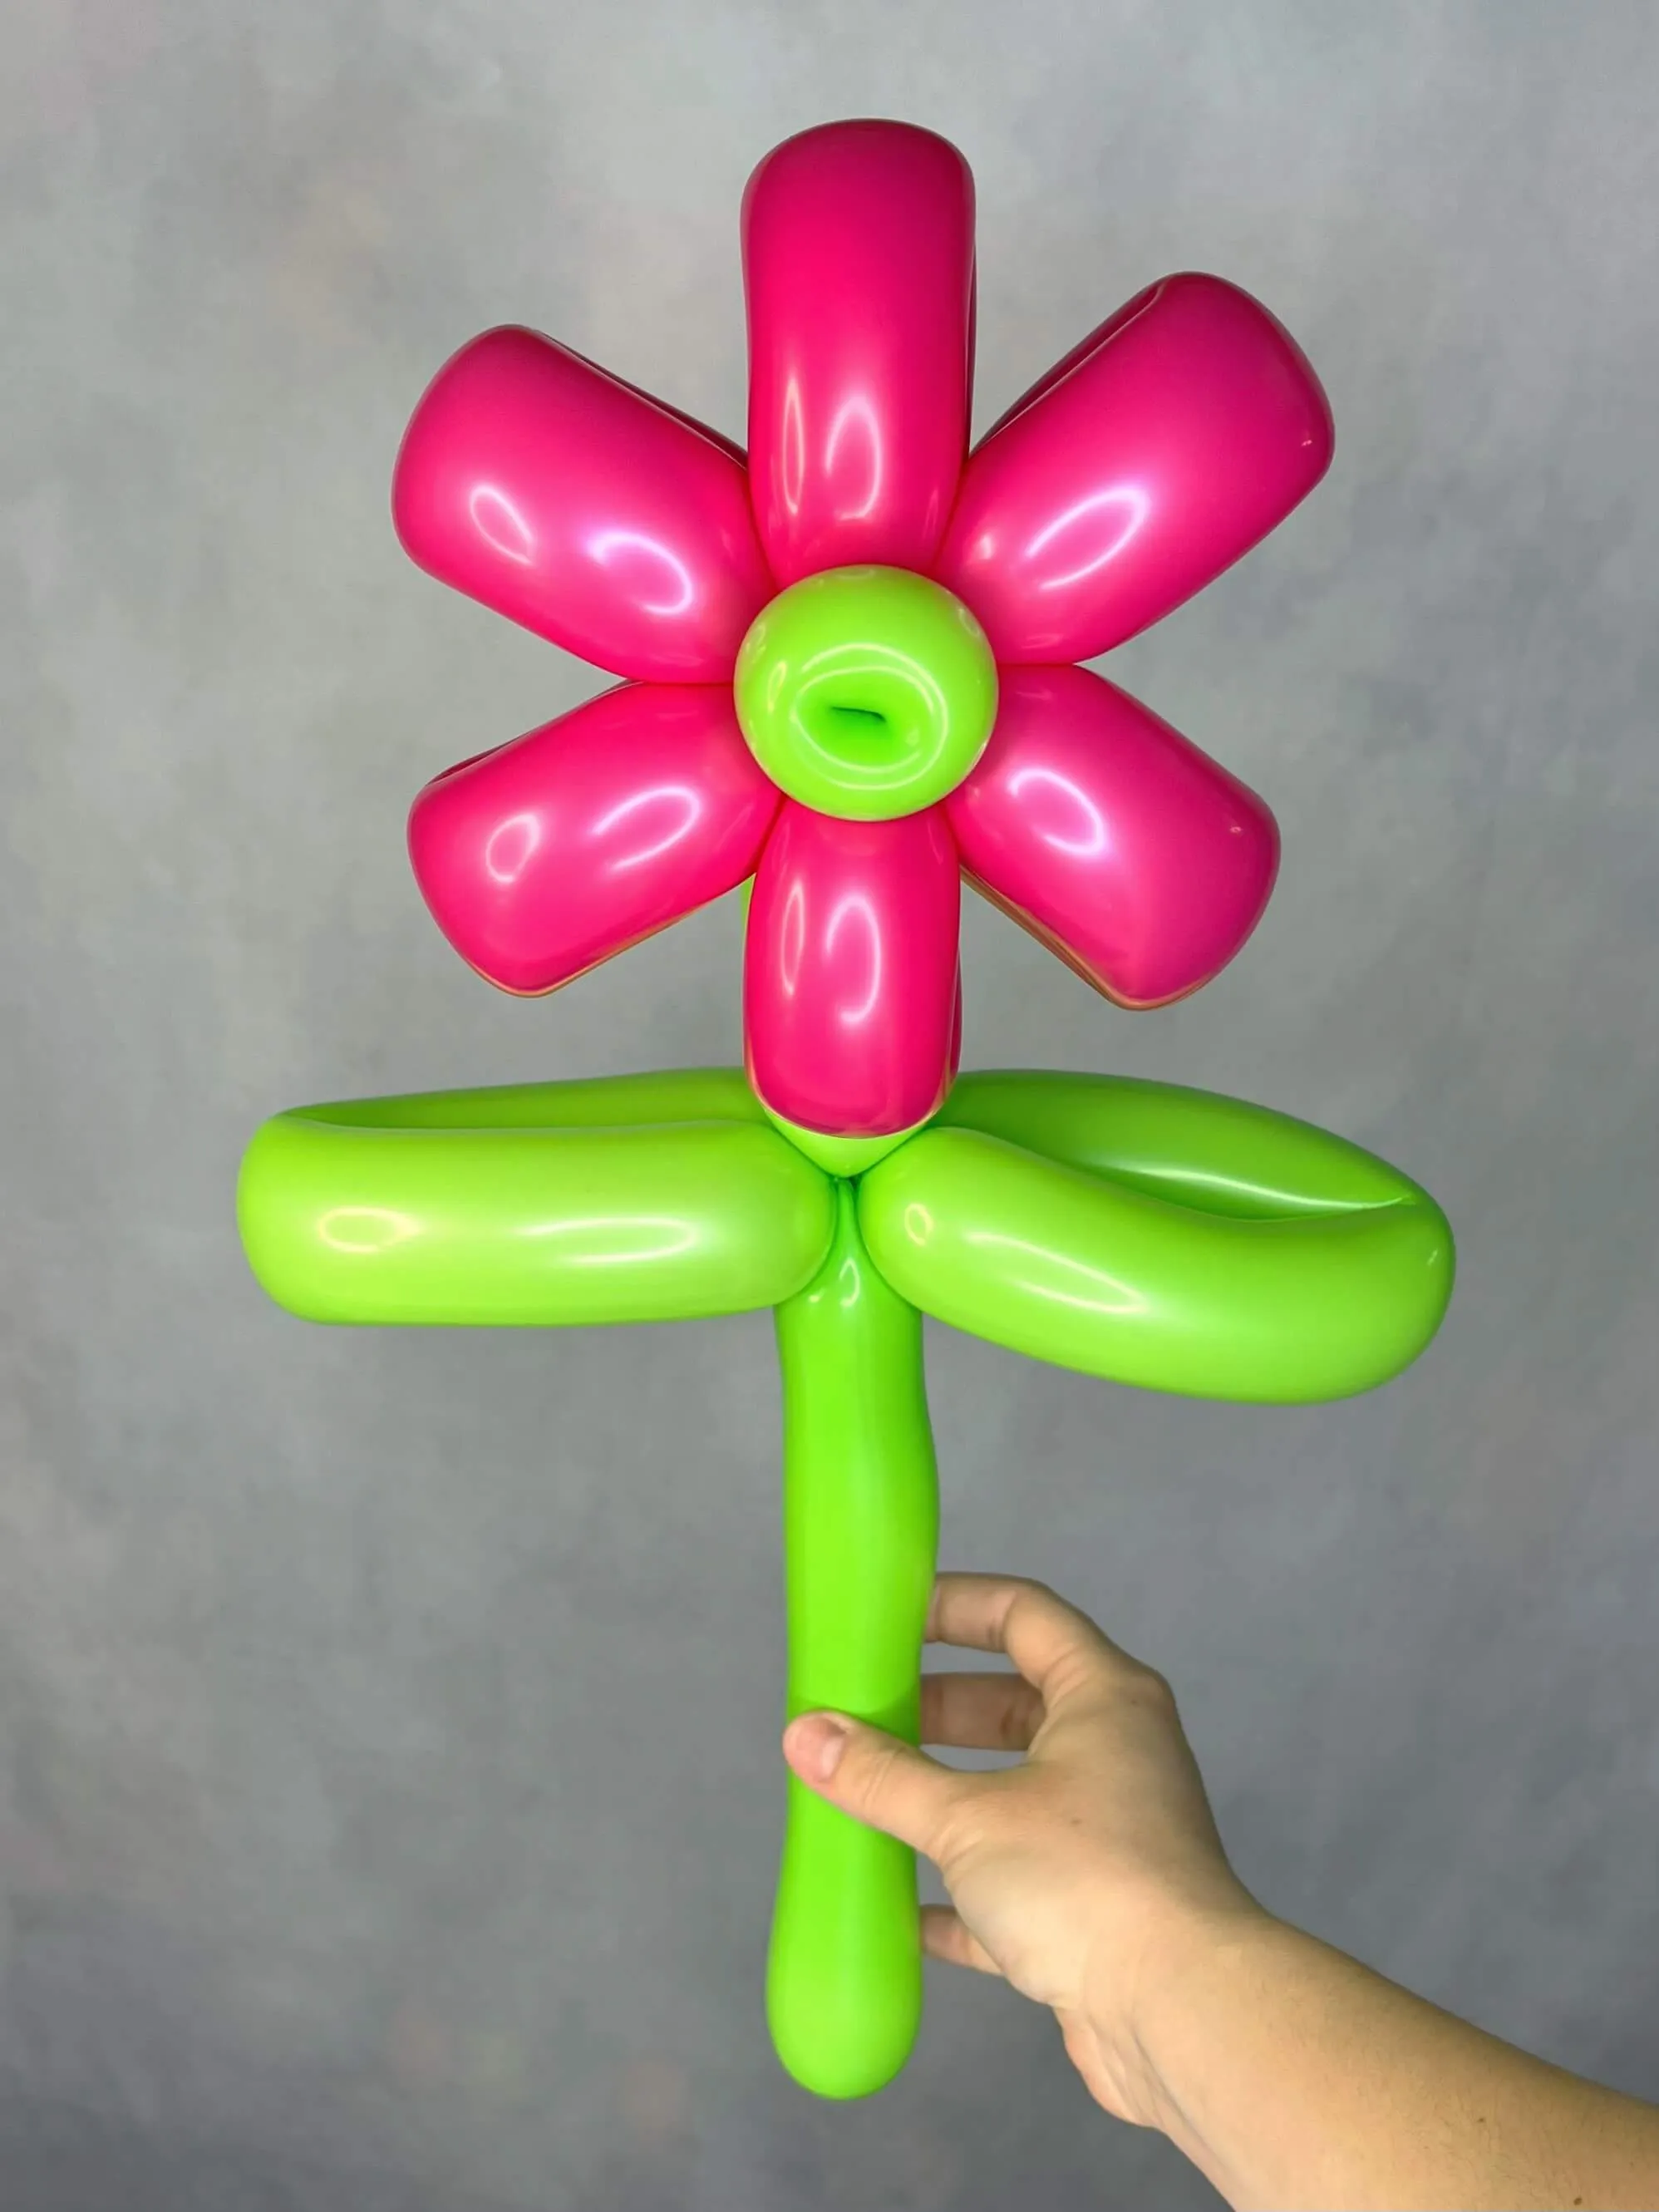 Balloon sculpture of a flower